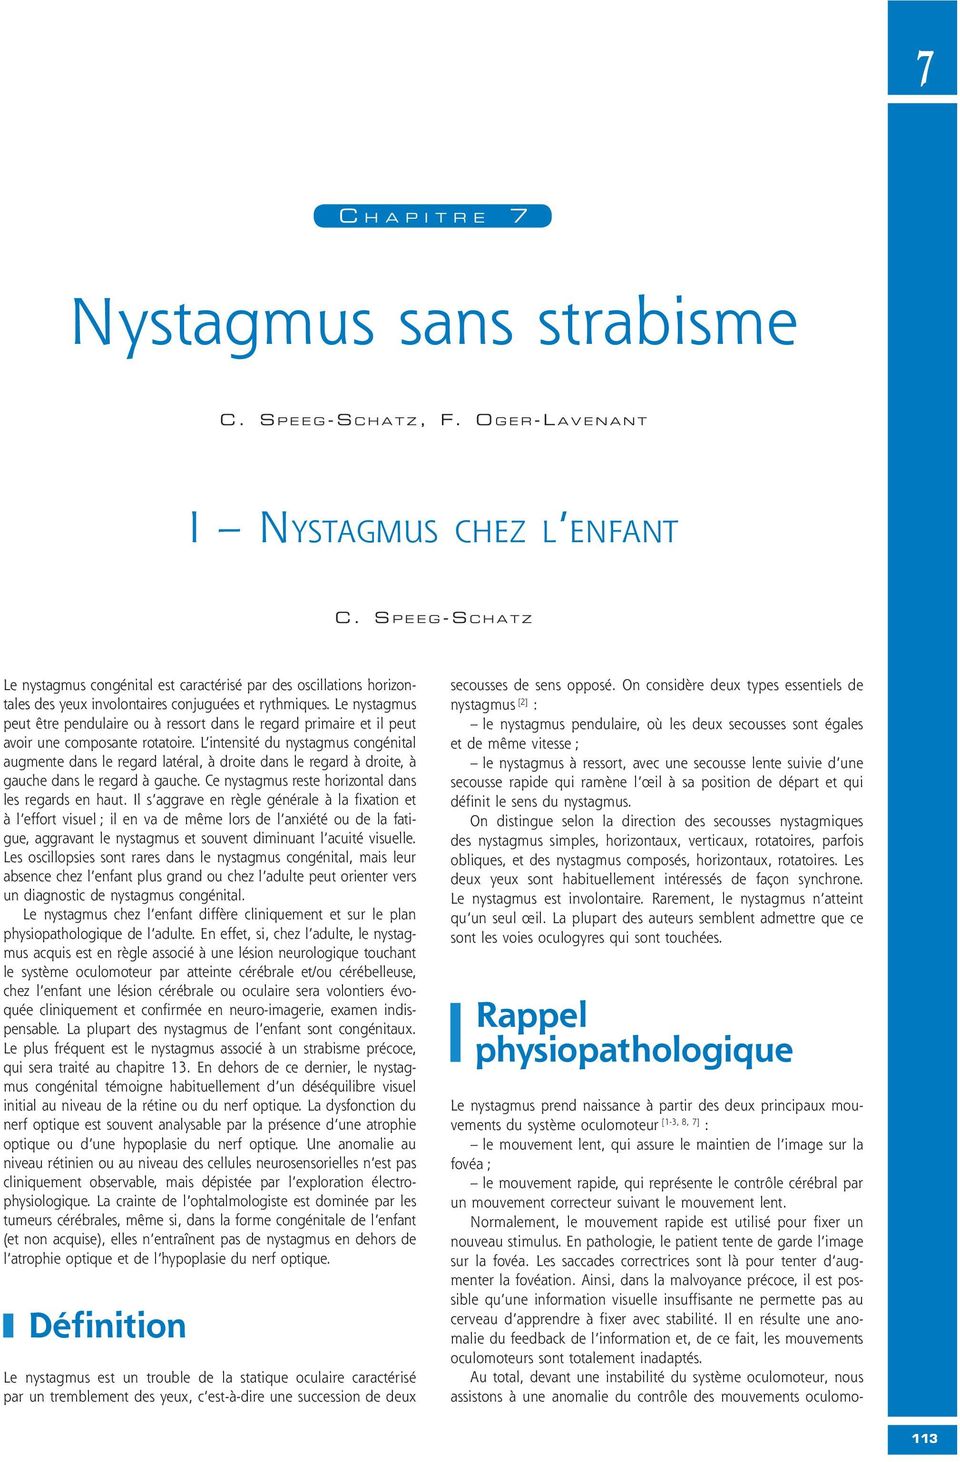 Le nystagmus peut être pendulaire ou à ressort dans le regard primaire et il peut avoir une composante rotatoire.